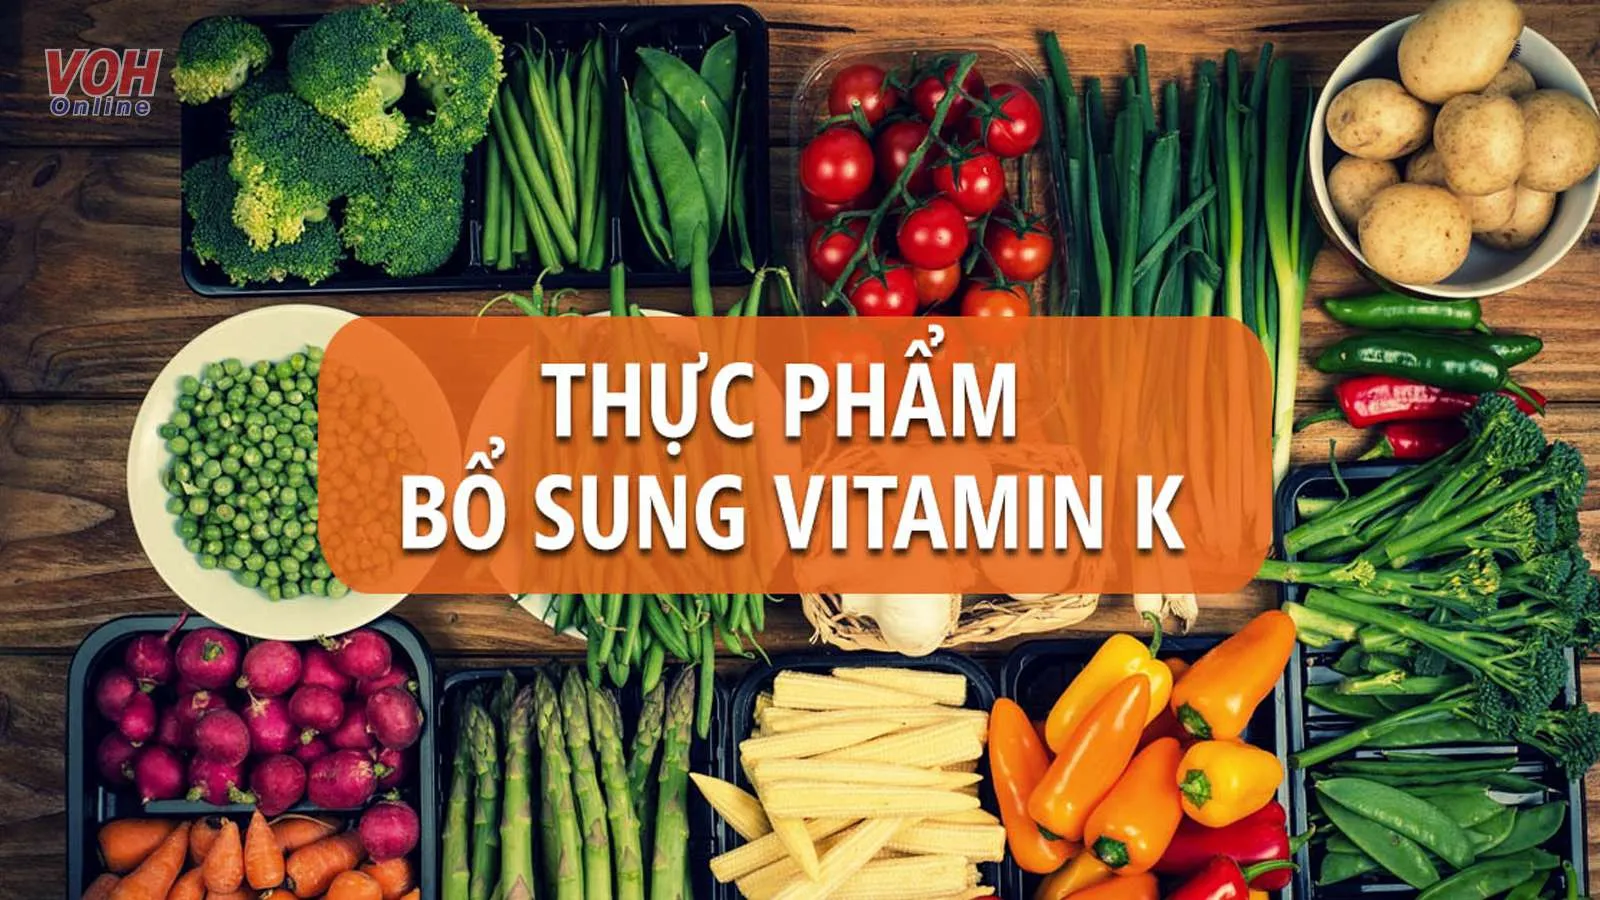 Vitamin K có trong thực phẩm nào bạn đã biết chưa?